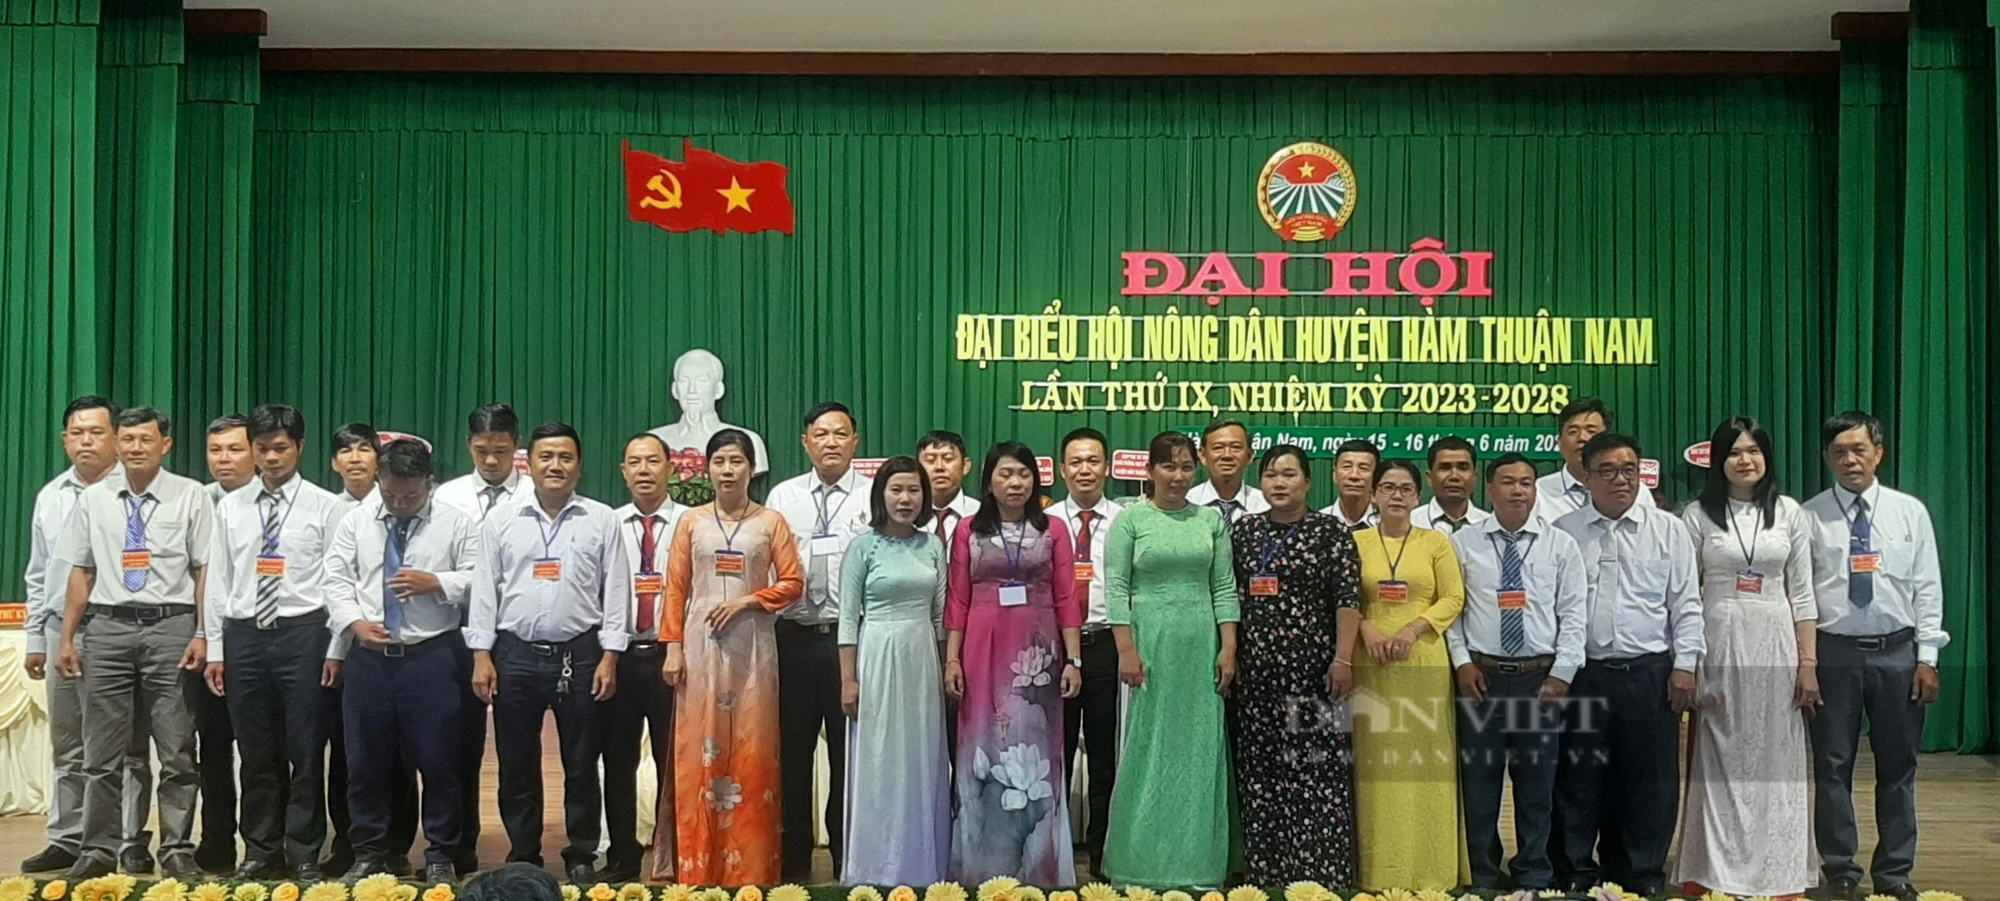 Bình Thuận: Ông Trần Xuân Thủ tái đắc cử chức Chủ tịch Hội Nông dân huyện Hàm Thuận Nam - Ảnh 6.